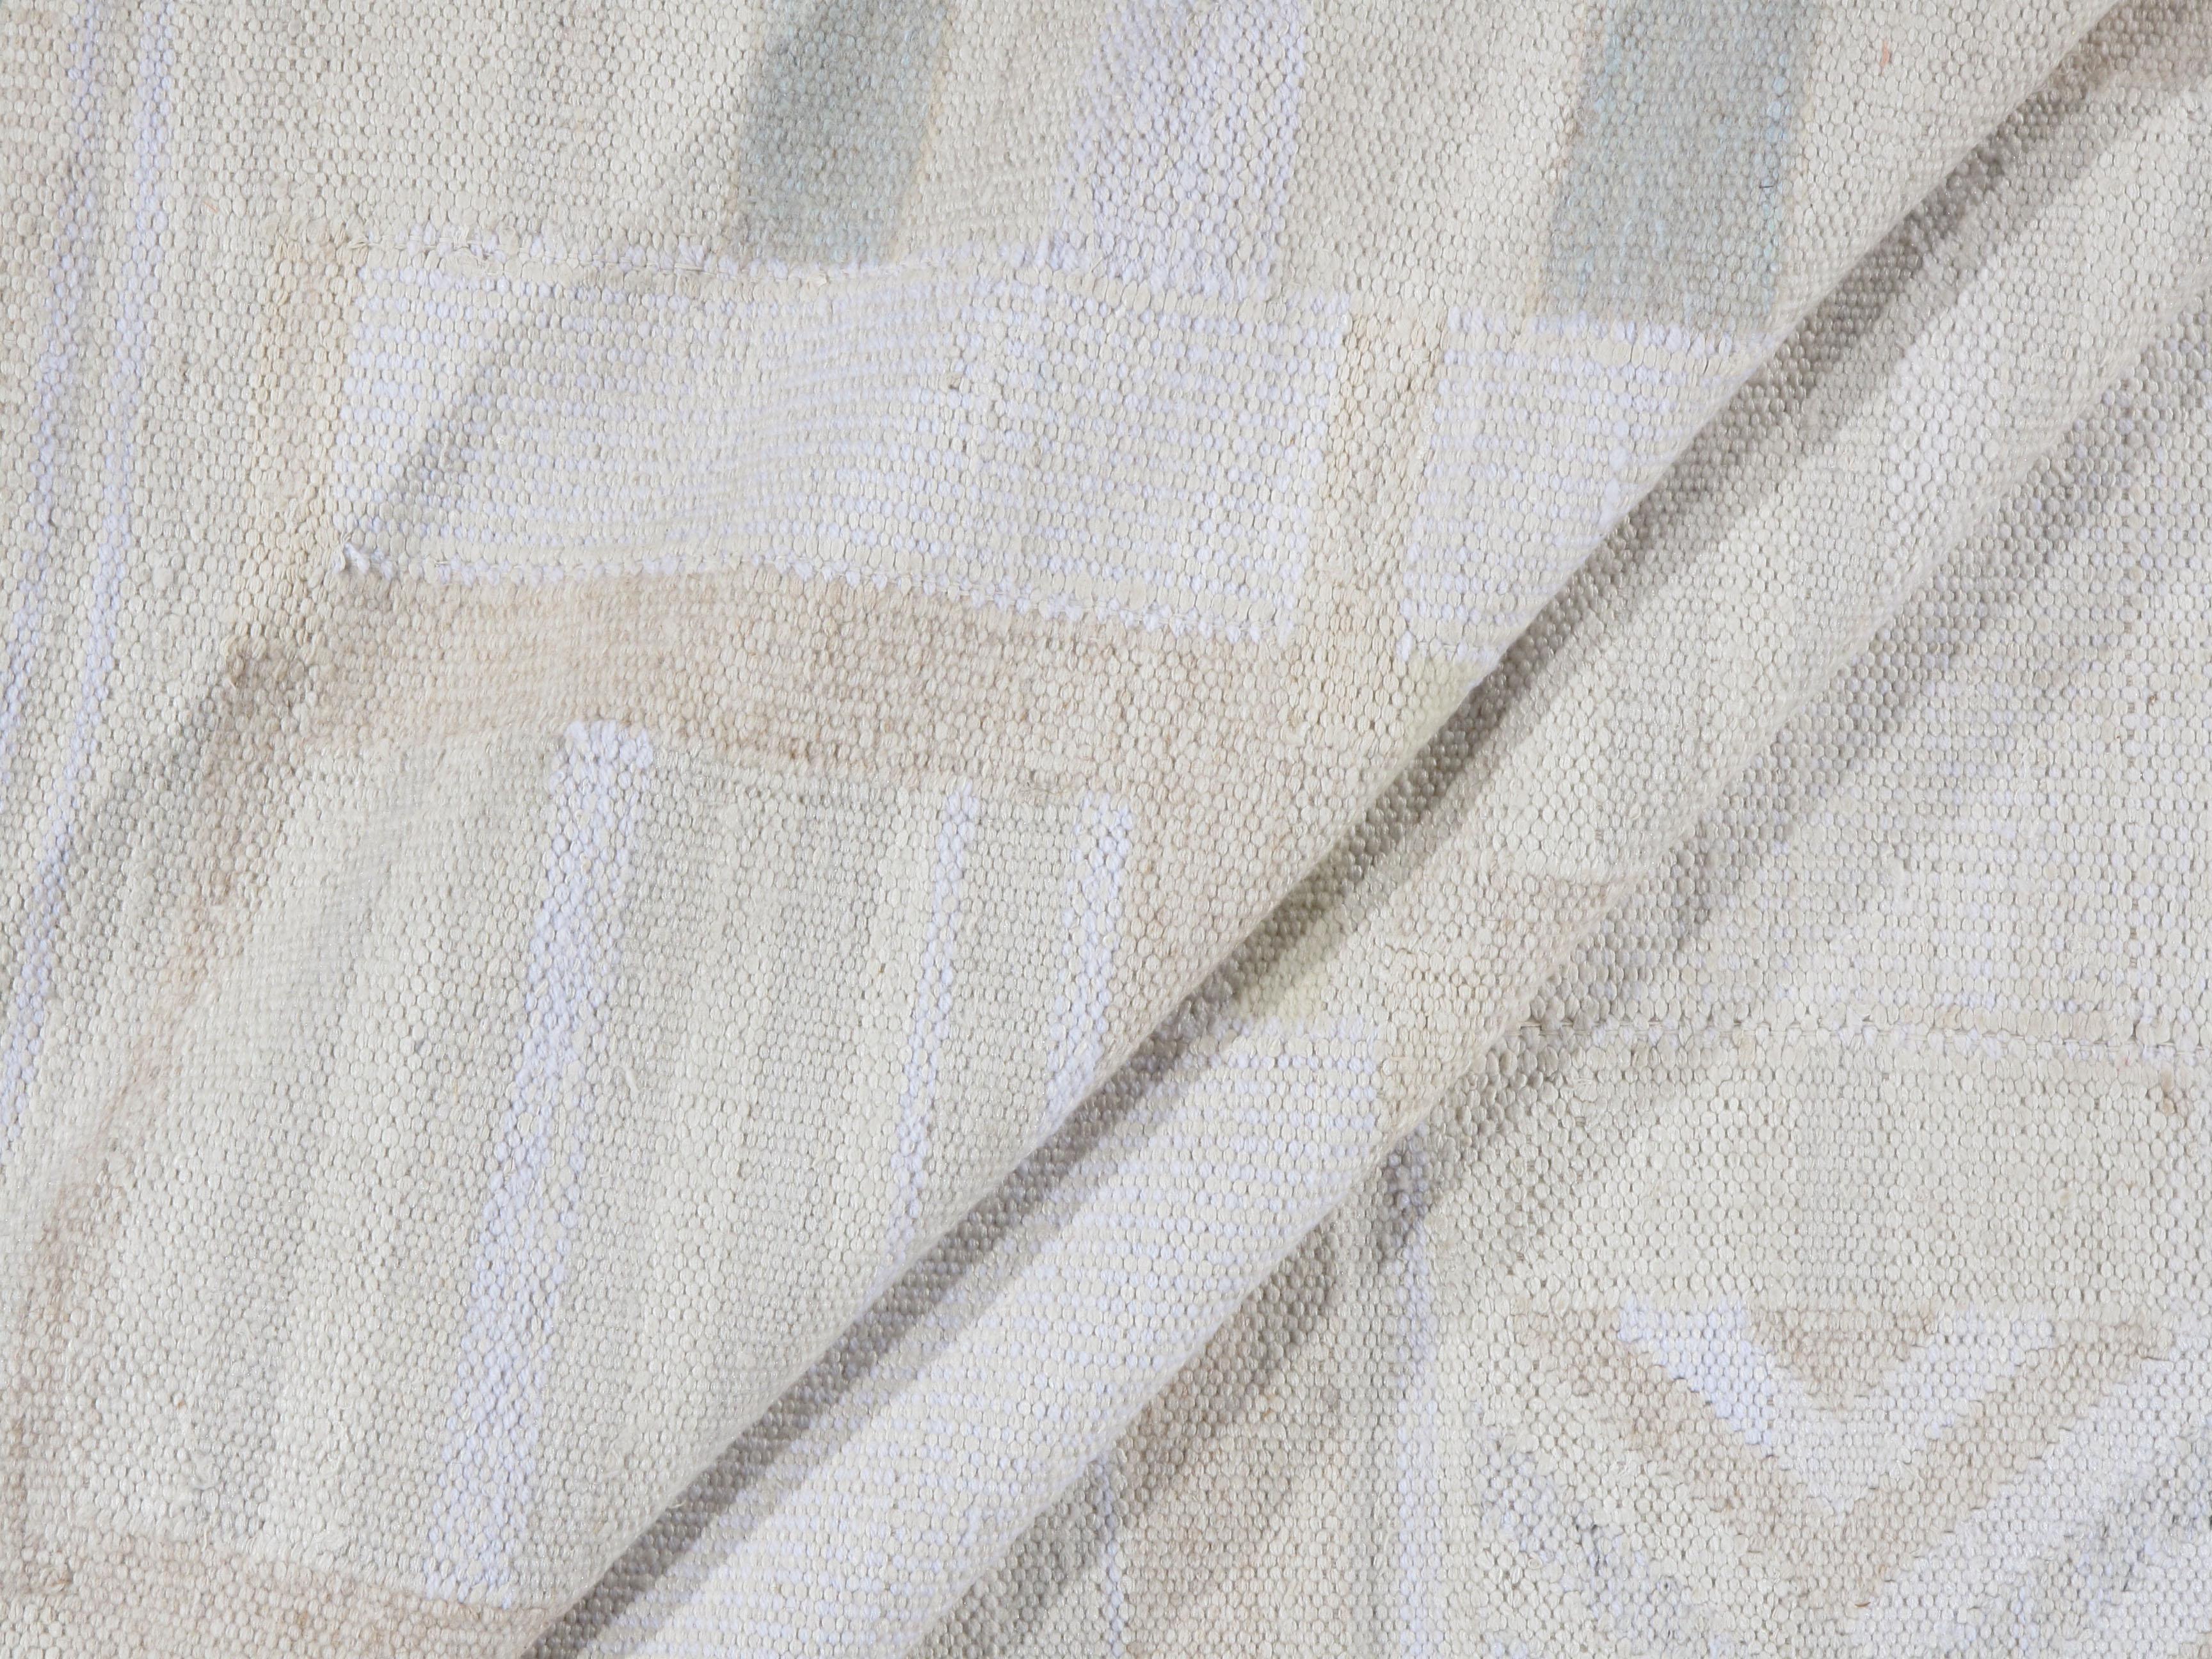 Skandinavischer Flachgewebe-Teppich im schwedischen Stil aus der Kollektion deco. Schwedischer Kilim-Deco-Teppich. Dieser in Indien handgewebte Kelim wurde in Anlehnung an das saubere und schlichte Aussehen schwedischer Designs gestaltet, um einen